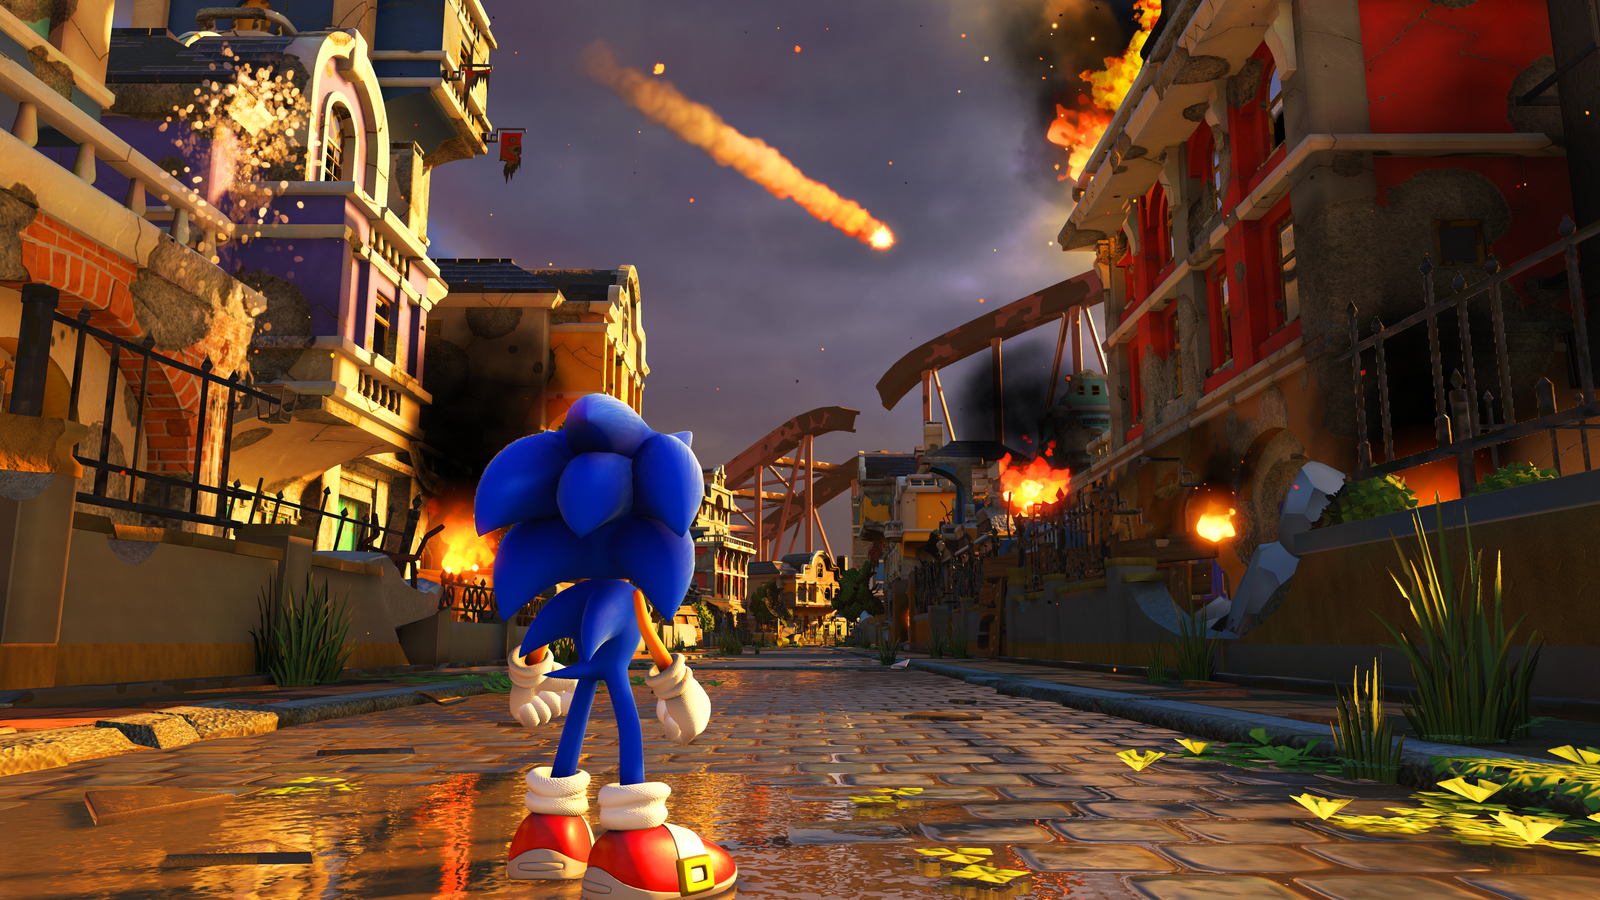 Blue hedgehog back in business - Video, Sega, Trailer, Sonic the hedgehog, Games, 